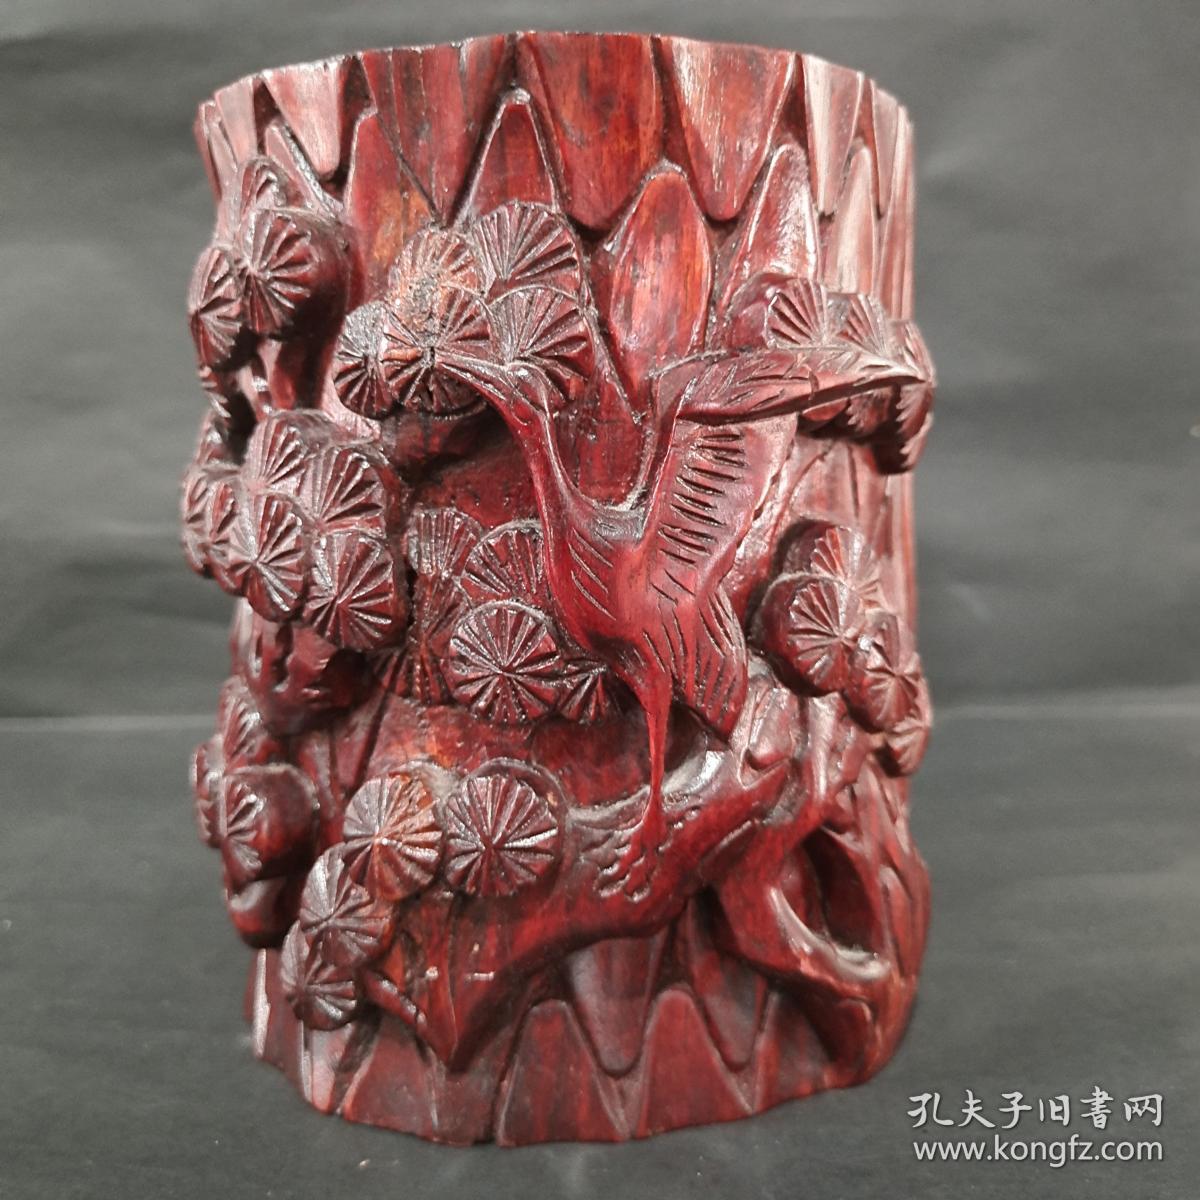 大红酸枝茶盘：材质难得，雕工更细腻 - 商家晒货 爱玉网